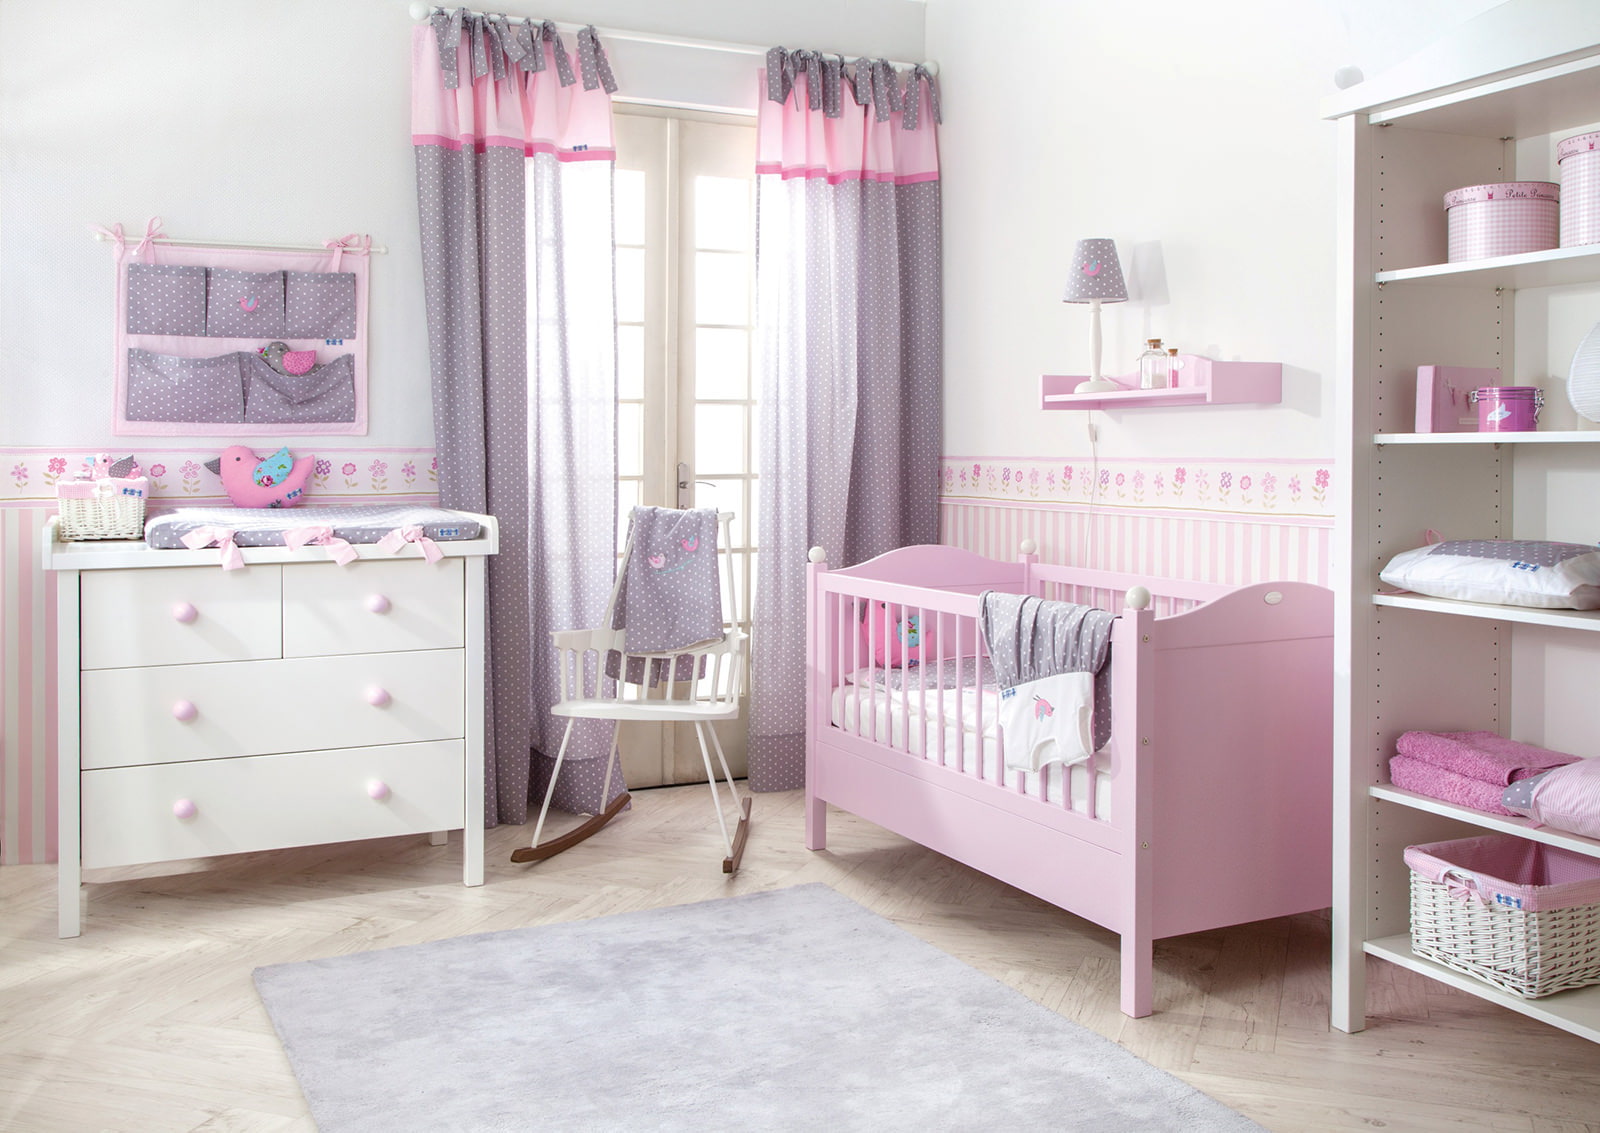 nursery in pink